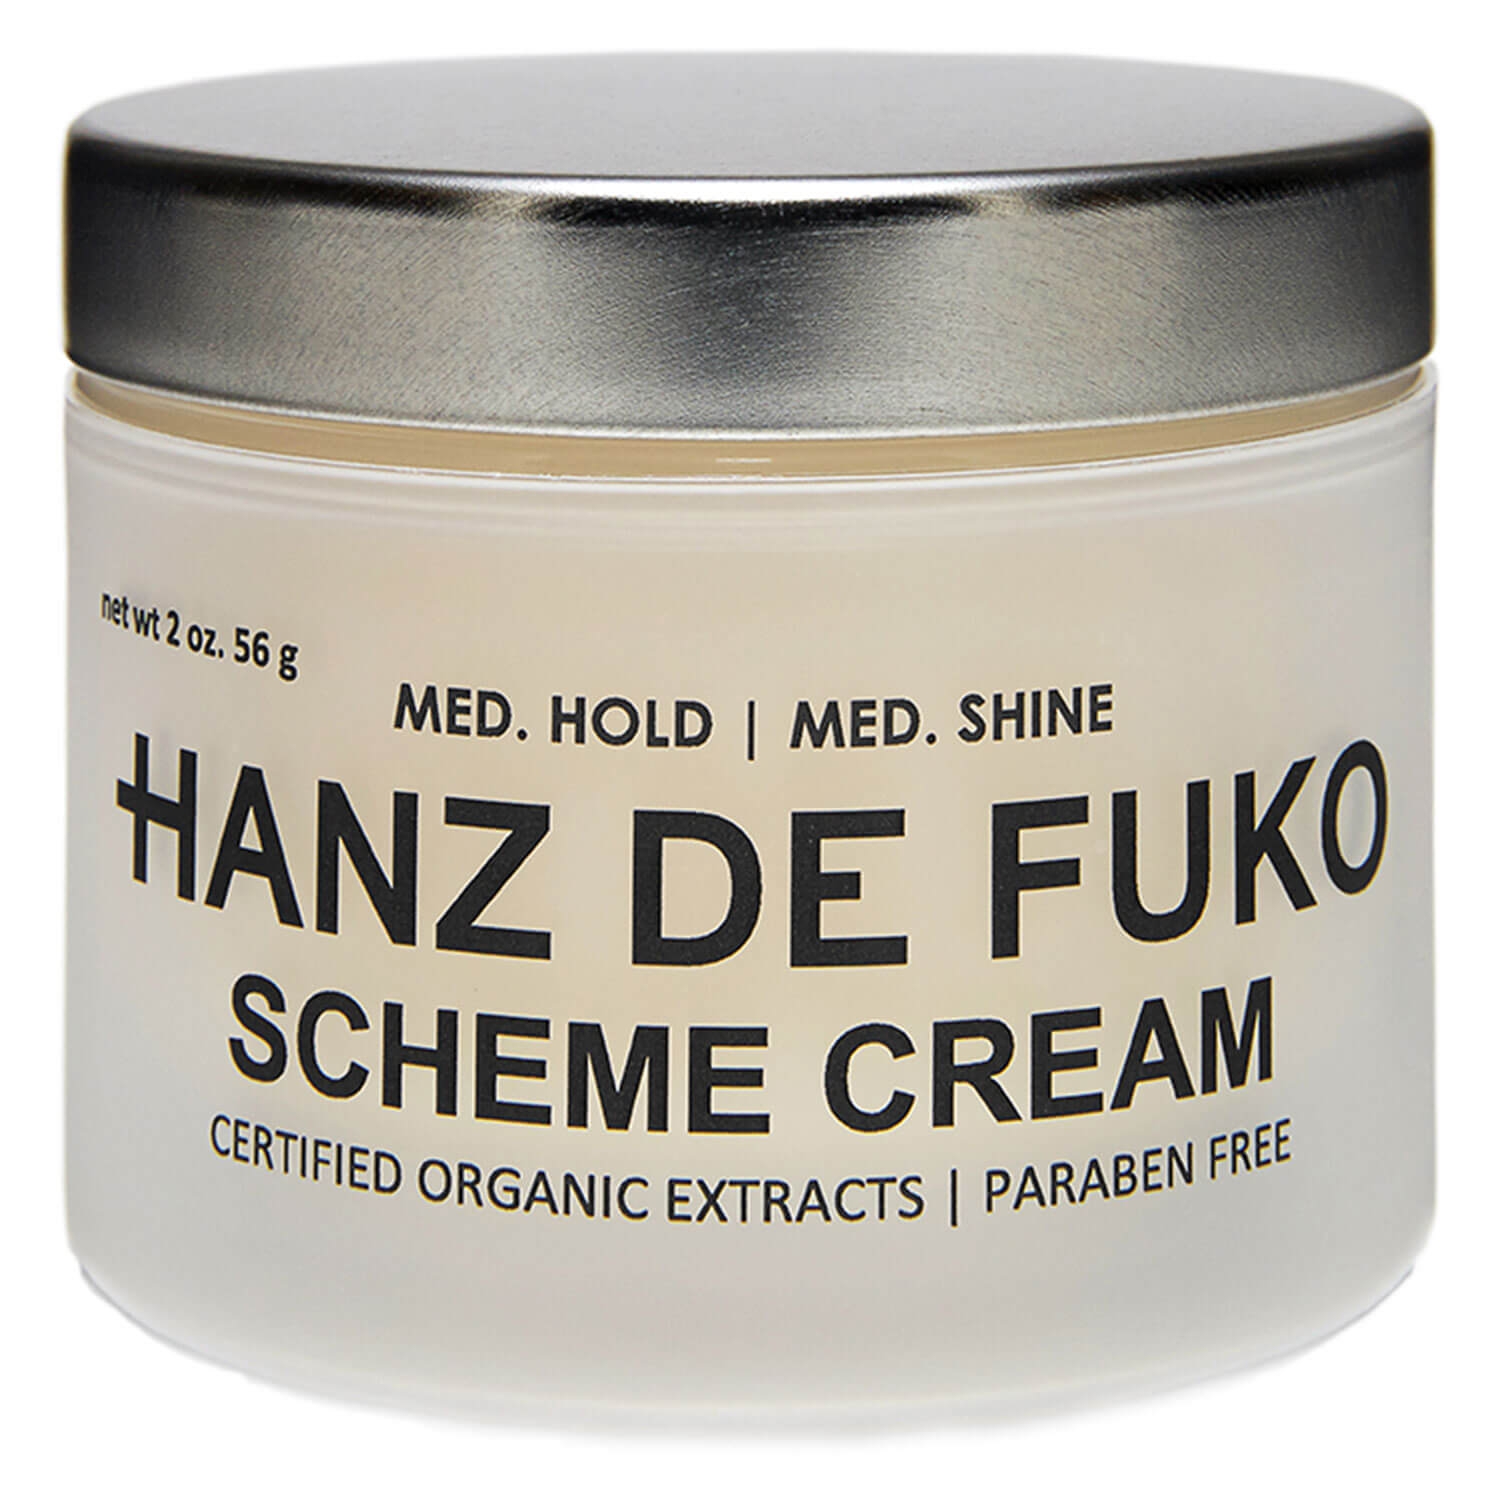 Produktbild von HANZ DE FUKO - Scheme Cream